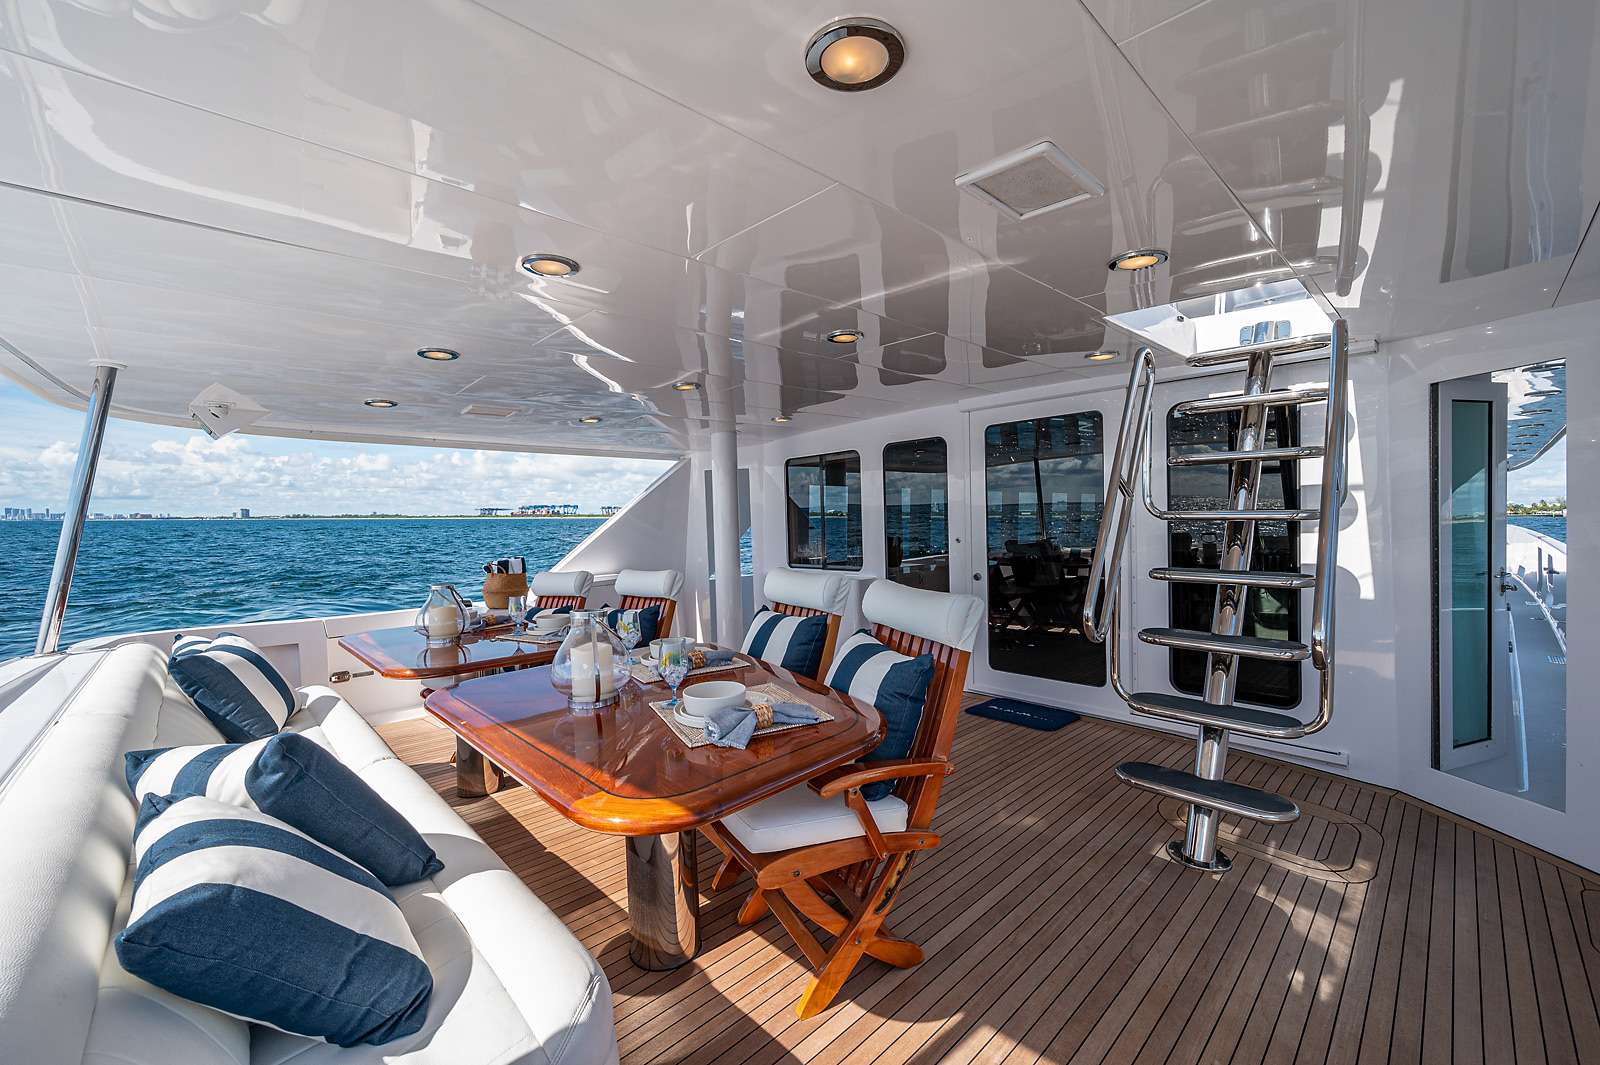 Hattaras 100 - Luxury yacht charter Bahamas & Boat hire in Bahamas New Providence Nassau Palm Cay One Marina 5